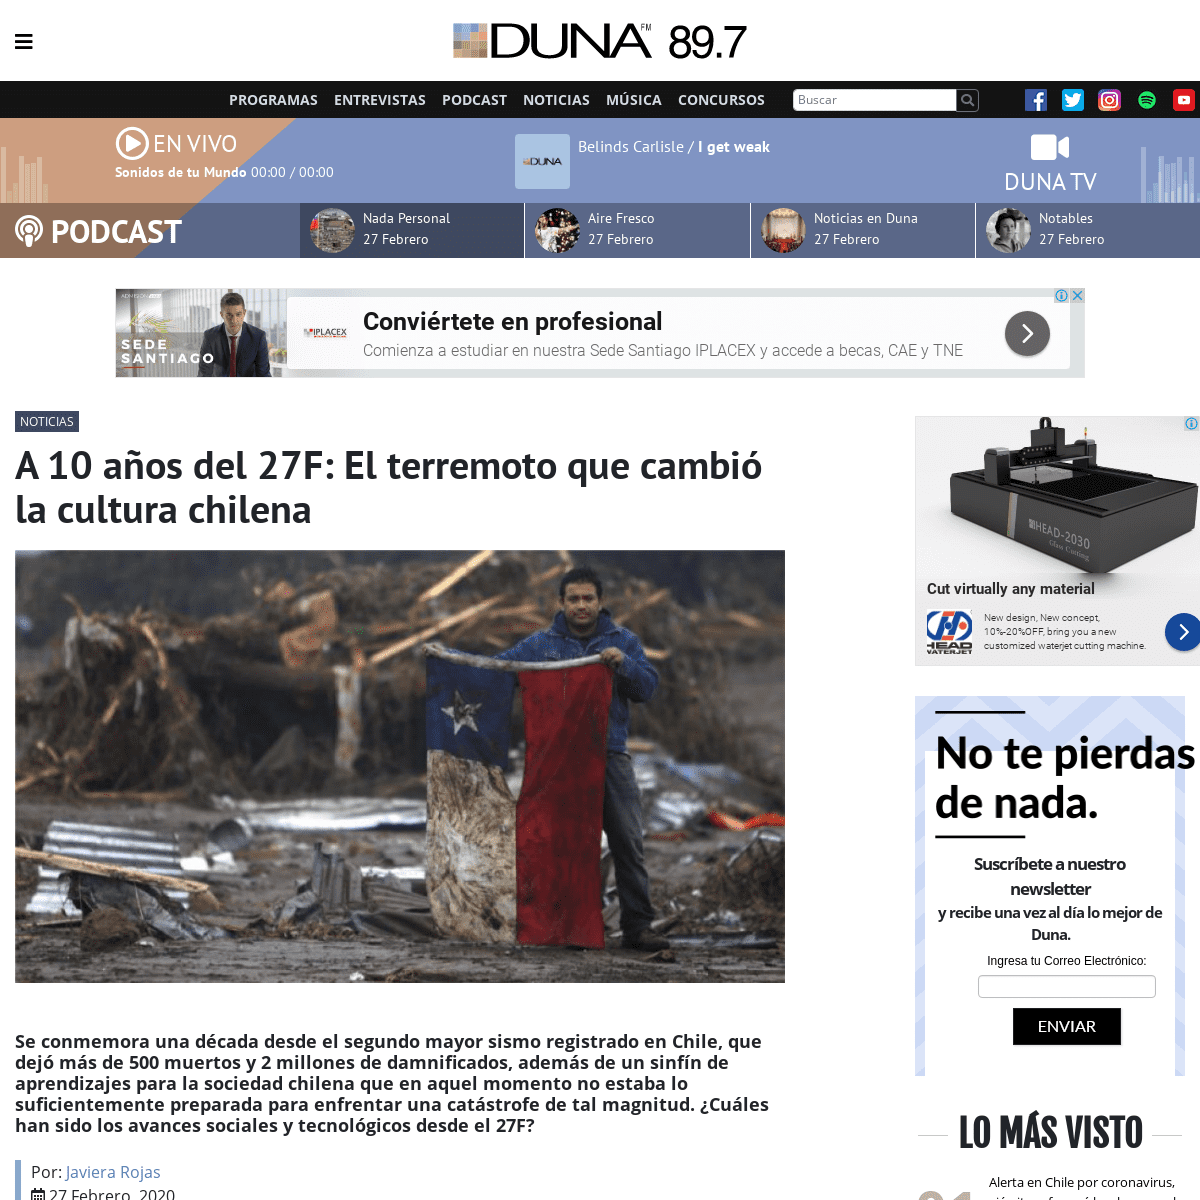 A complete backup of www.duna.cl/noticias/2020/02/27/a-10-anos-del-27f-el-terremoto-que-cambio-la-cultura-chilena/